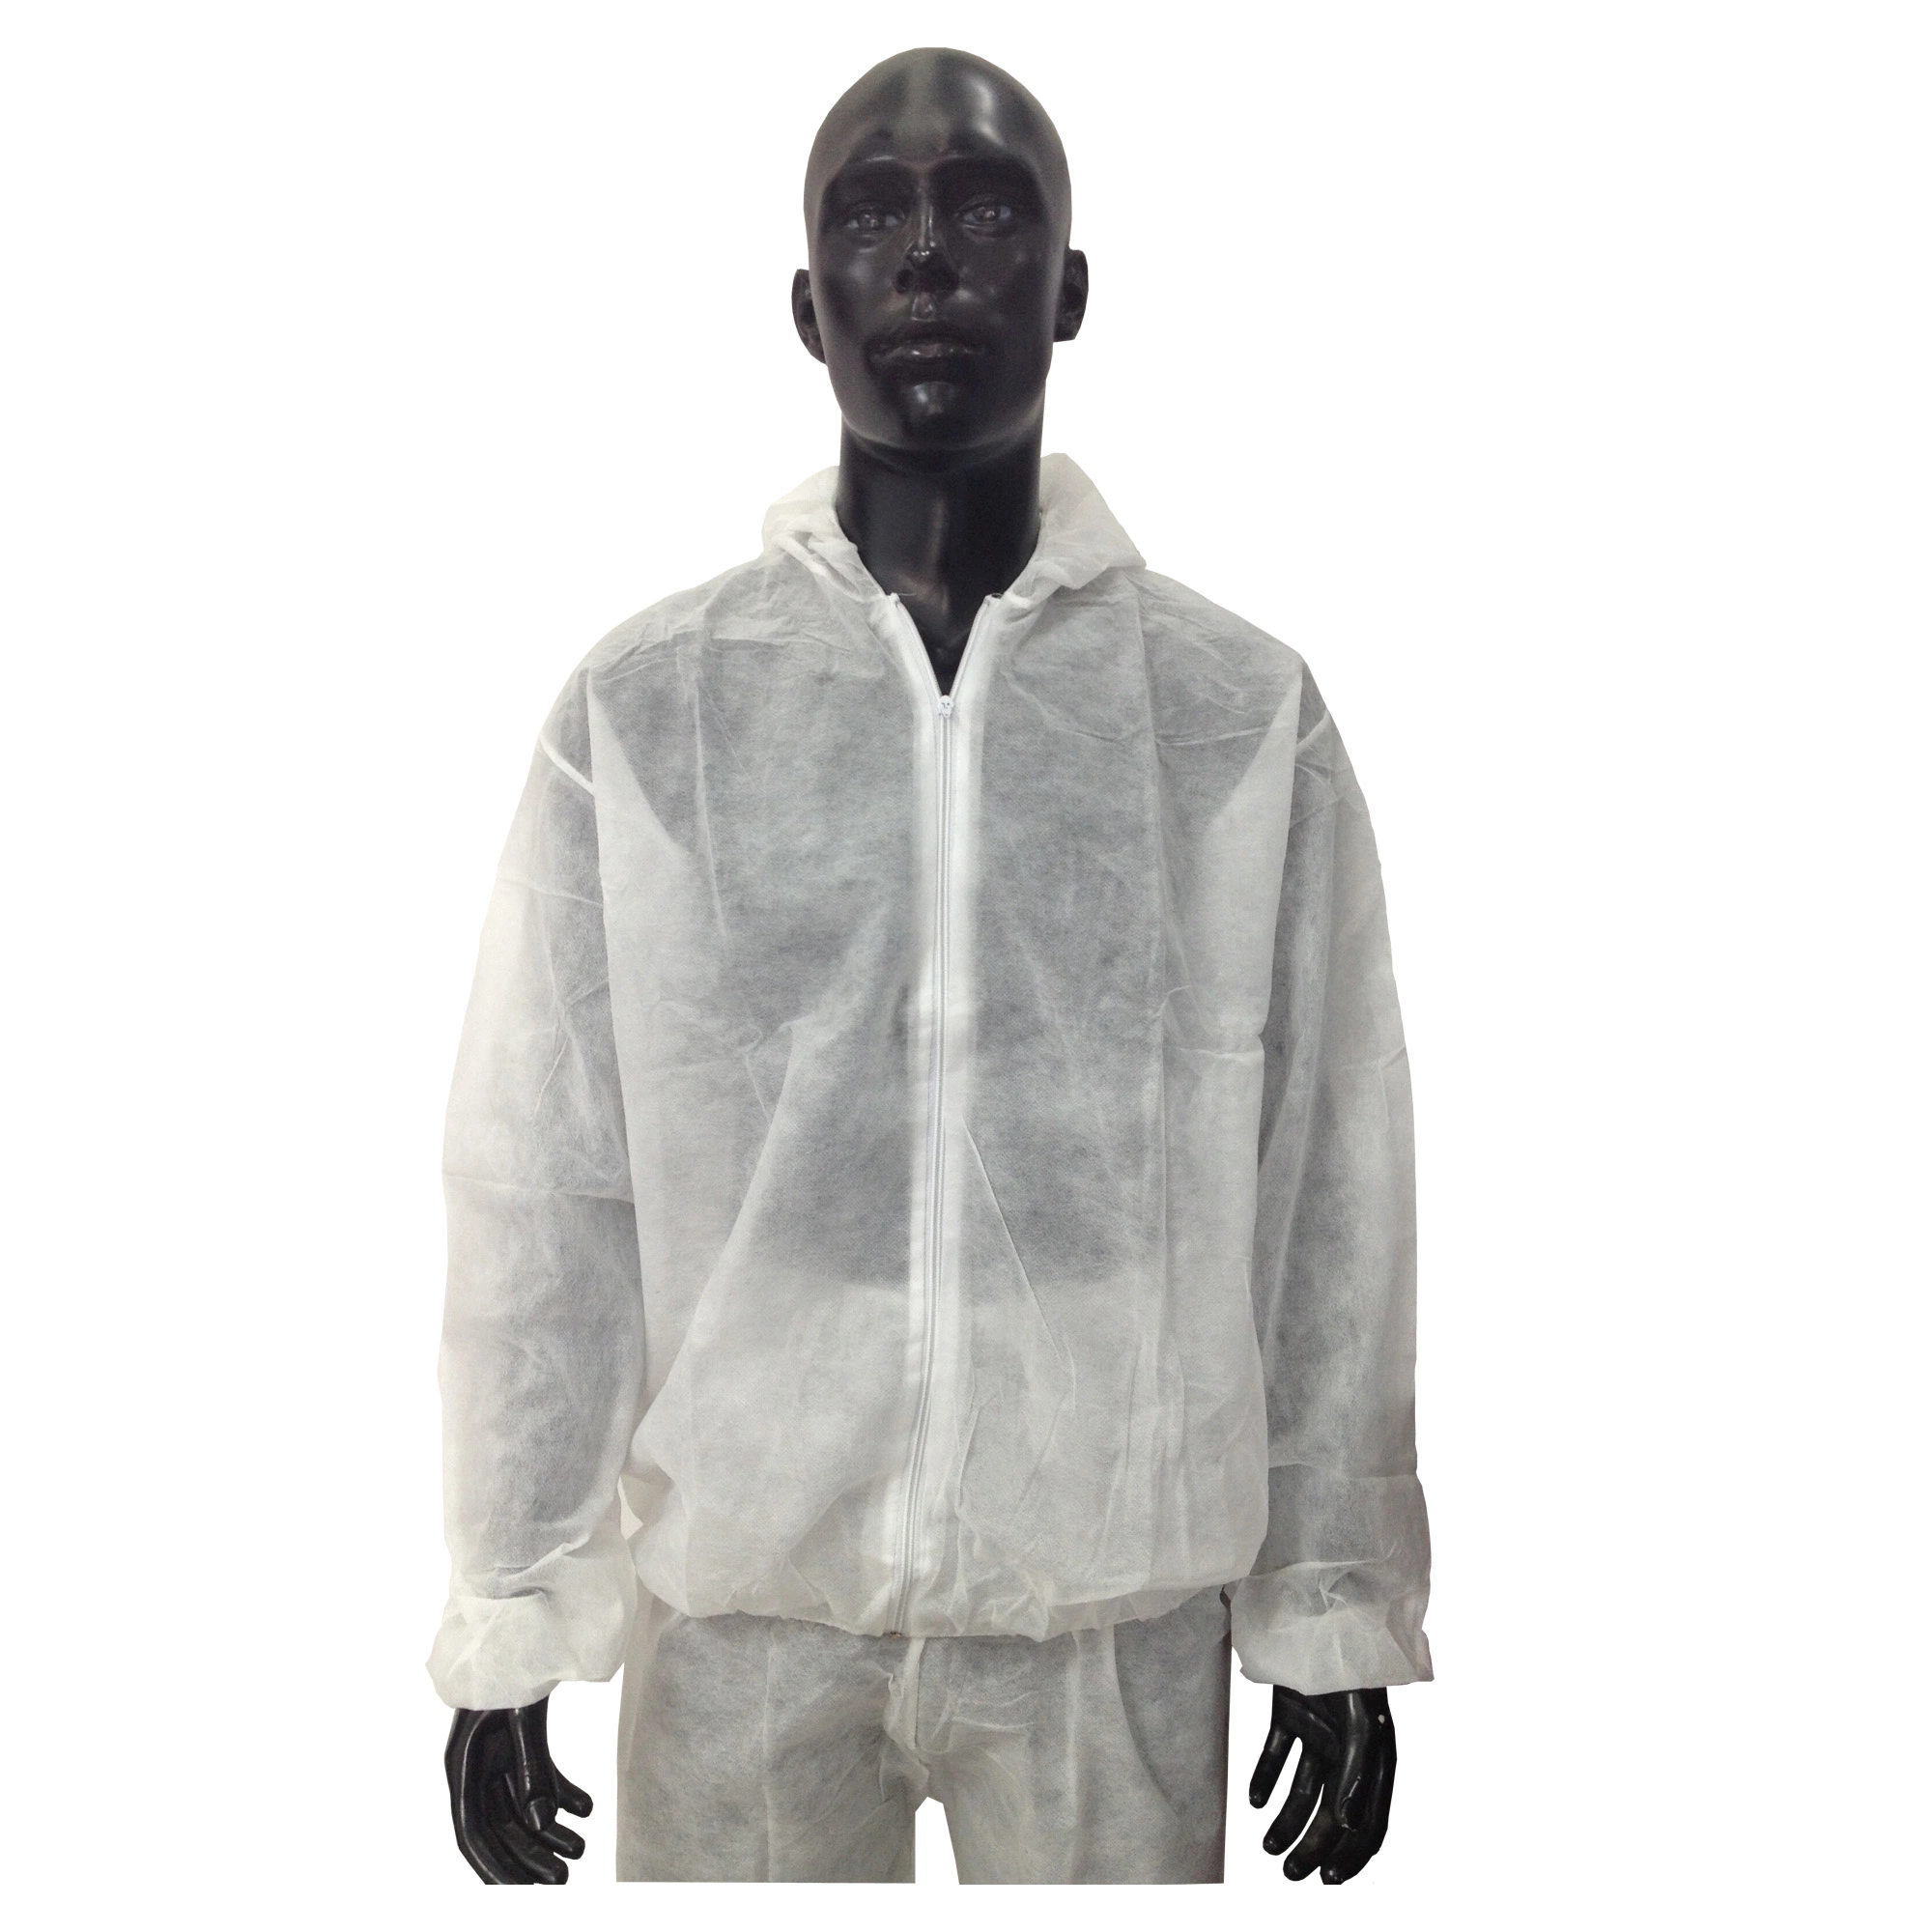 Einweg-Schutzjacke Aus Vliesstoff, Sicherheitsjacke, Arbeitskleidung Aus Jacke